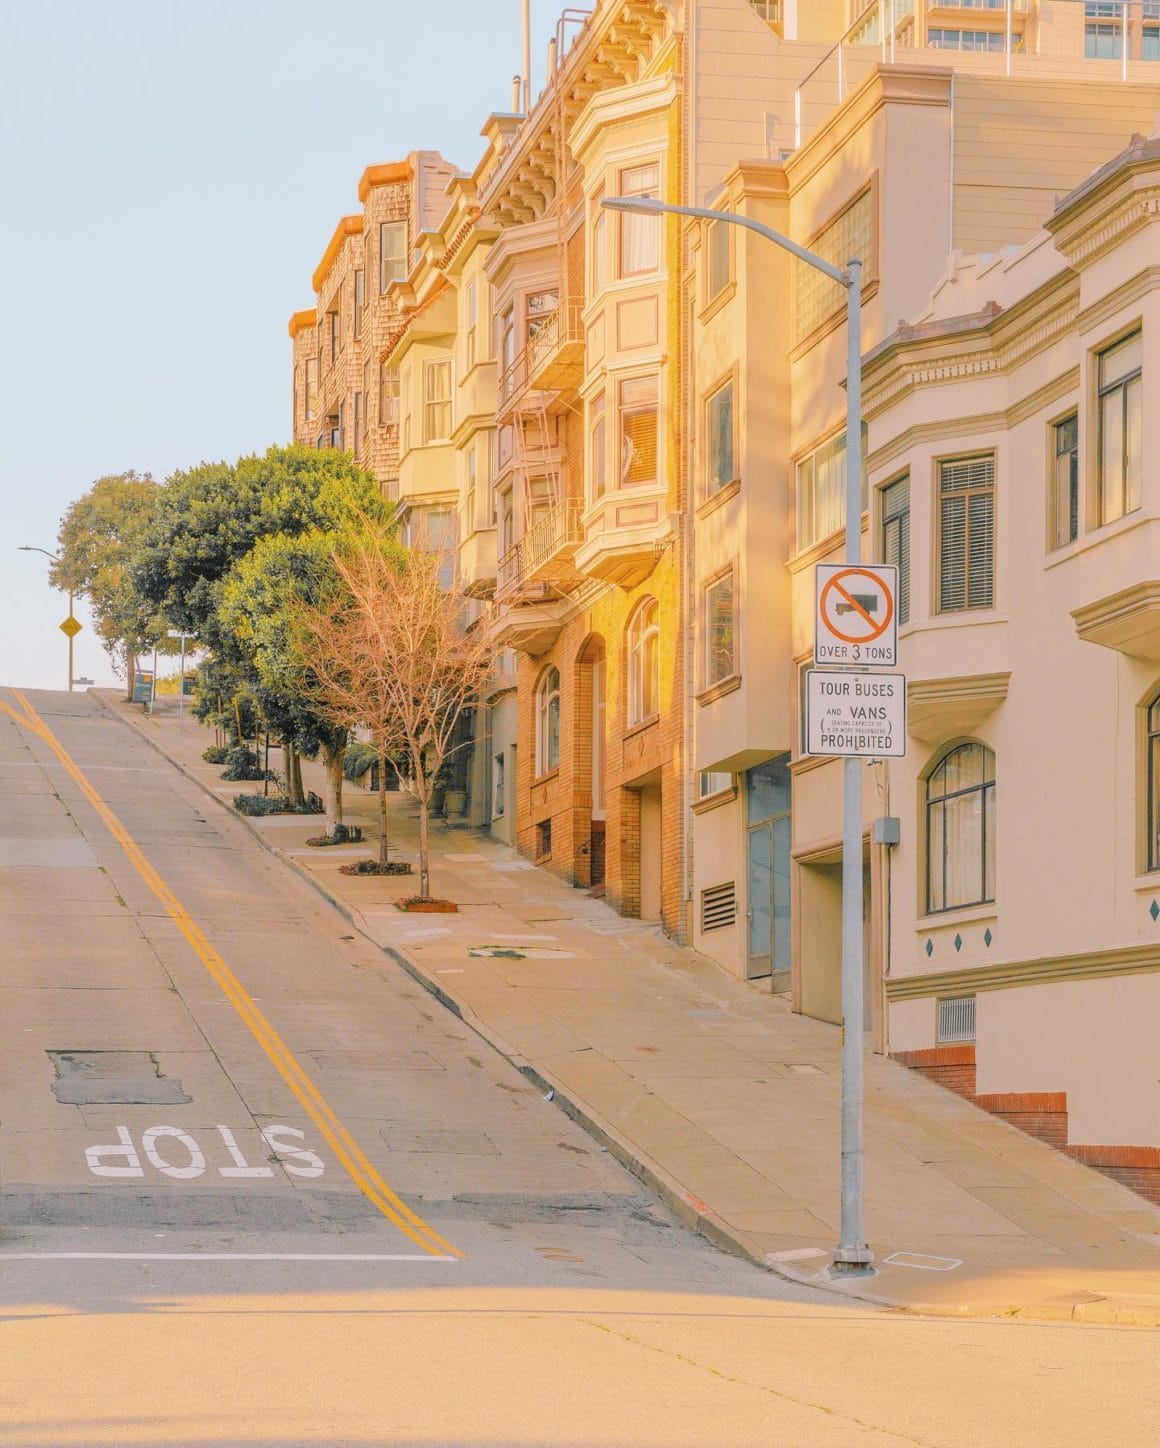 Photographie d'une route urbaine de San Francisco par Teresa Freitas